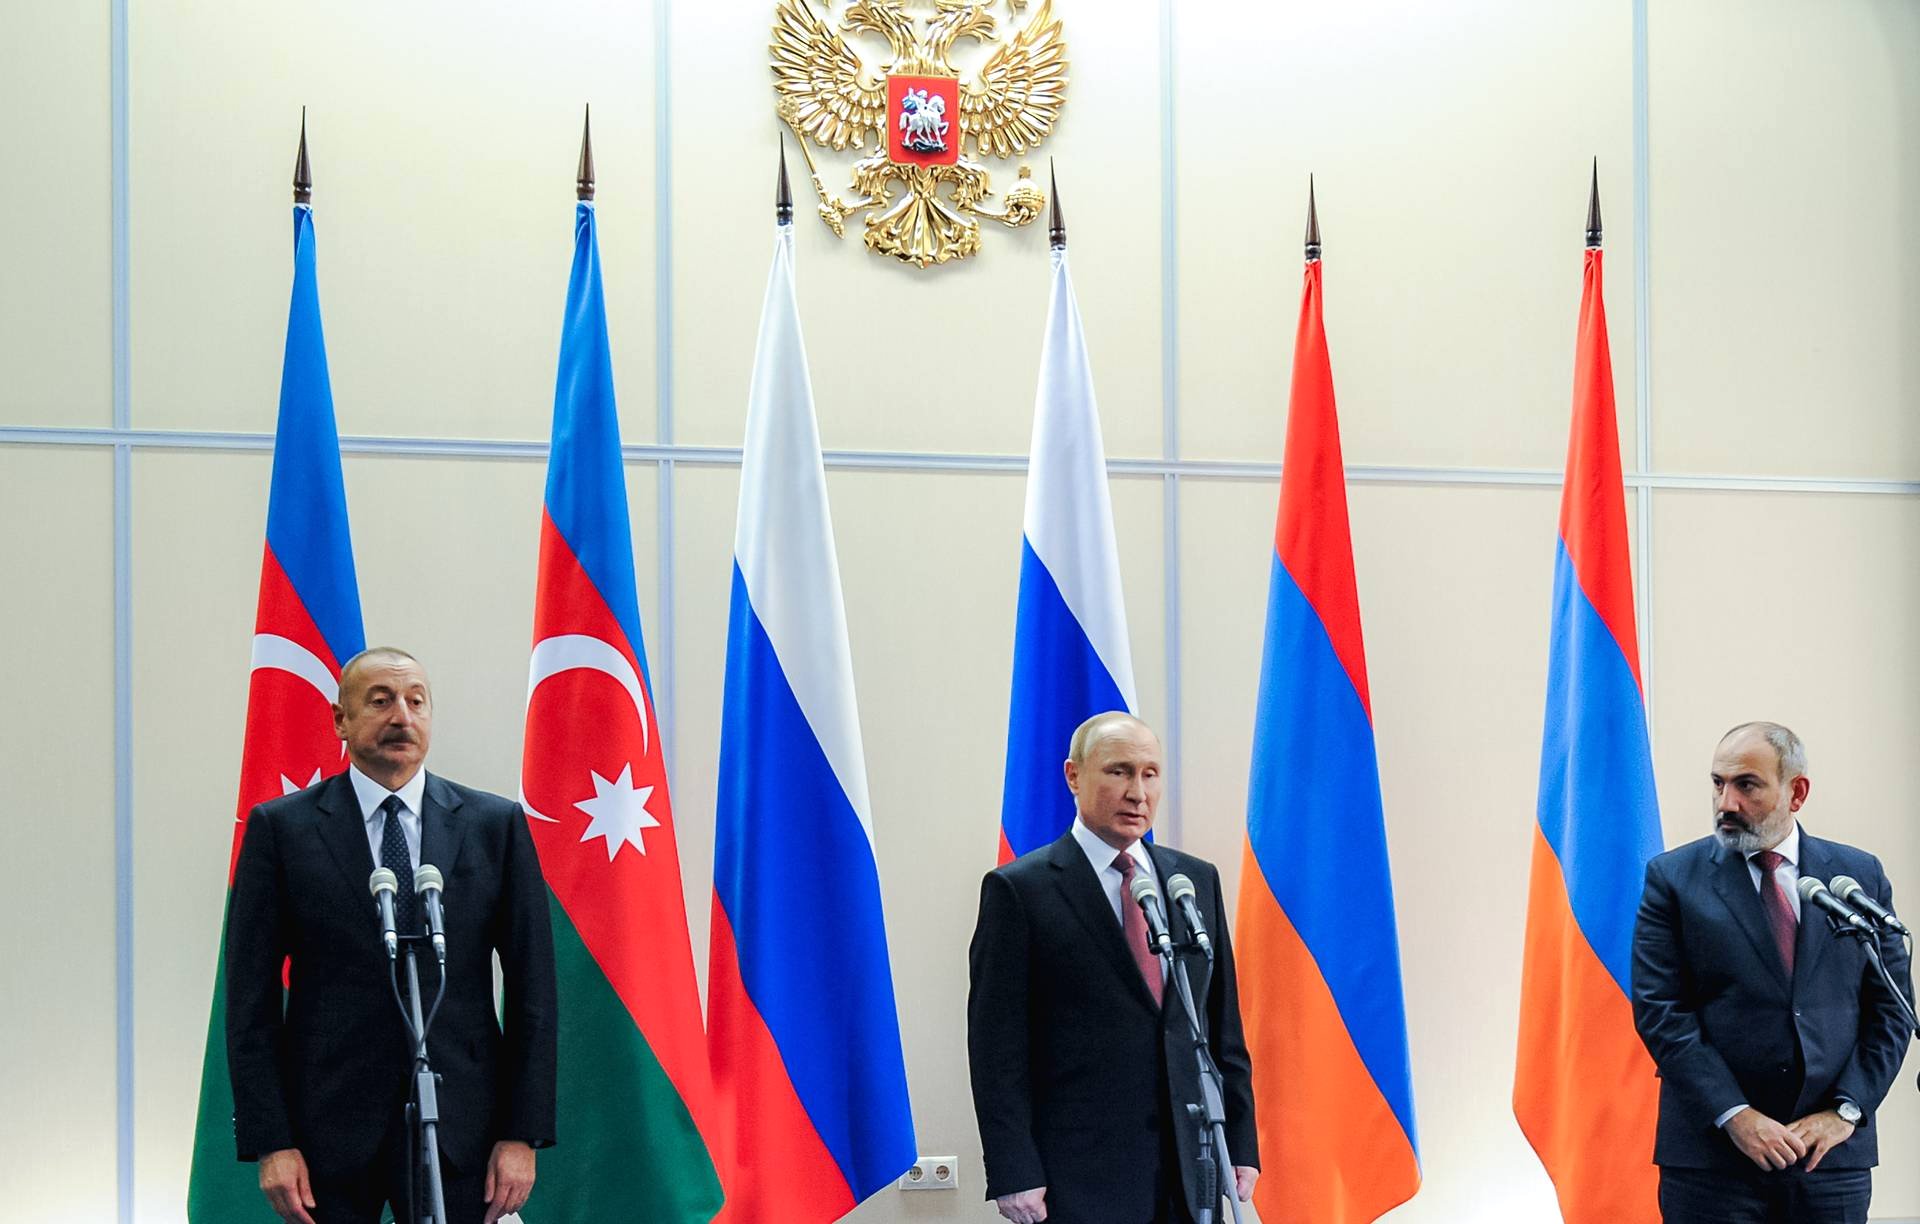 Ադրբեջանի և Հայաստանի միջև սահմանազատումը կիրականացվի Ռուսաստանի աջակցությամբ